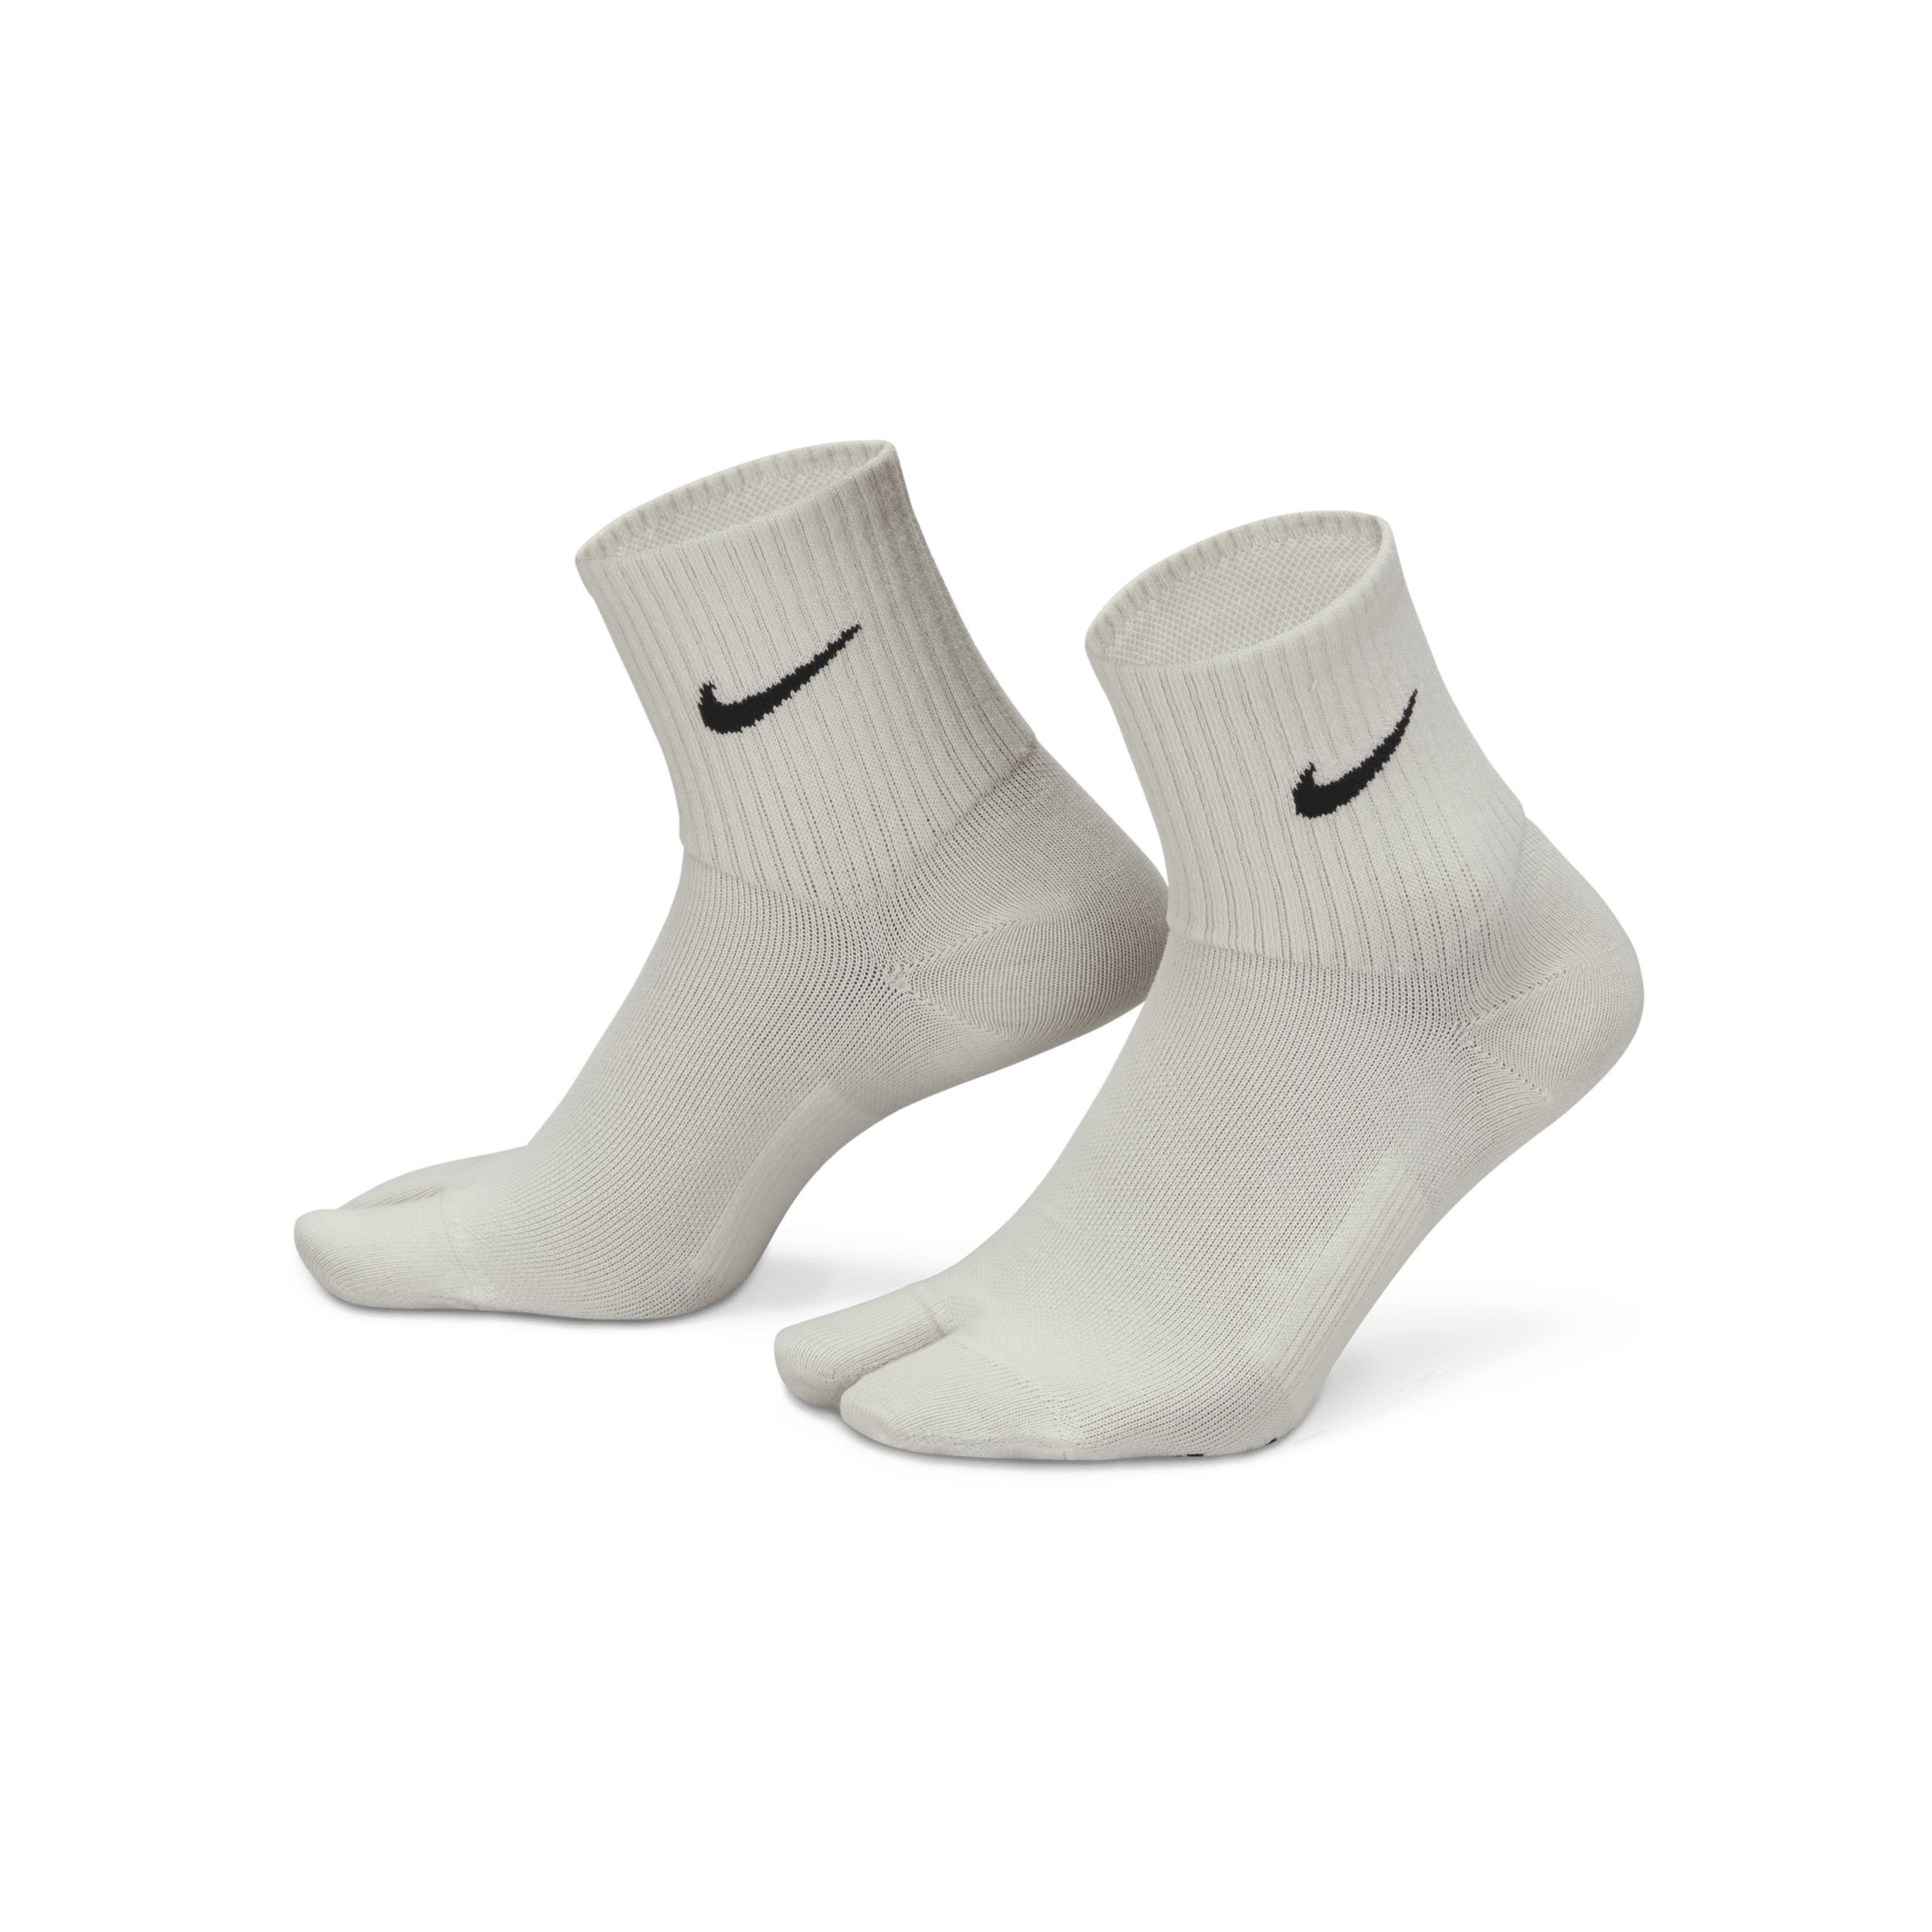 Nike Everyday Plus Lichte enkelsokken met gesplitste tenen - Grijs